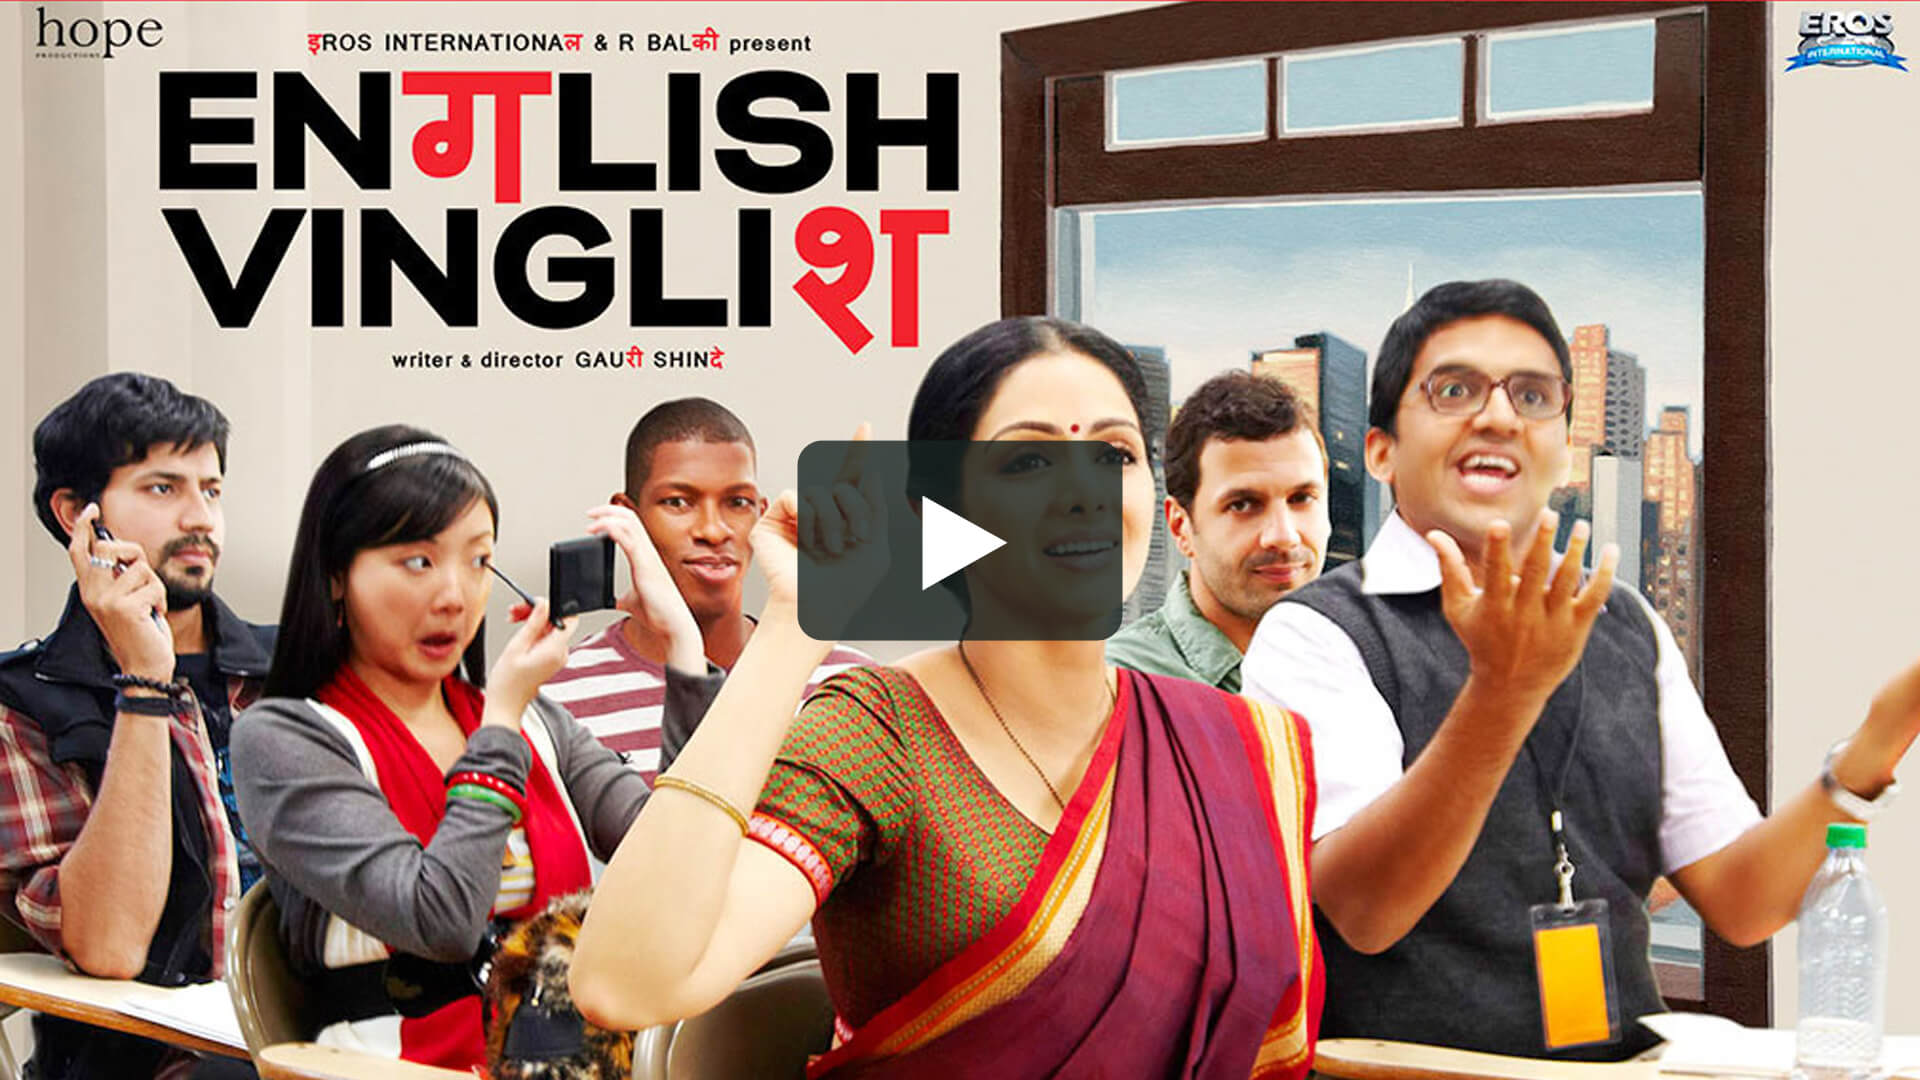 印式英語 - English Vinglish